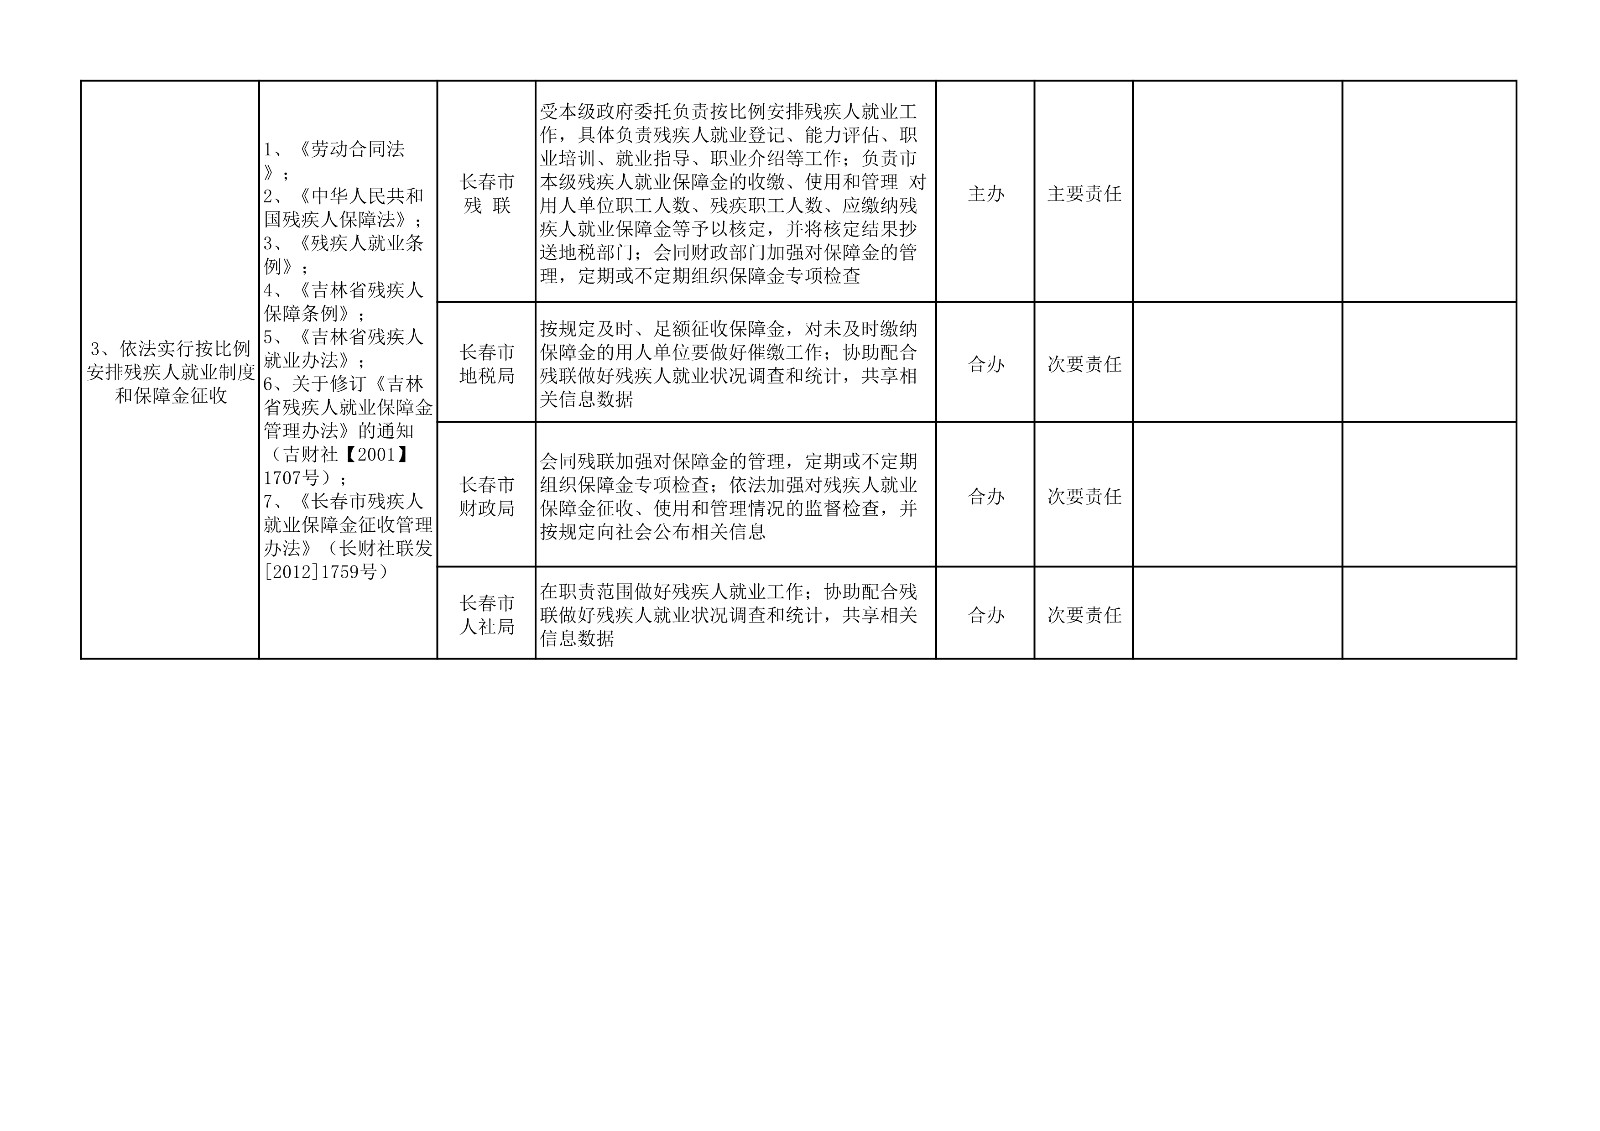 长春市残联与相关部门职责边界审核登记表_3.jpg